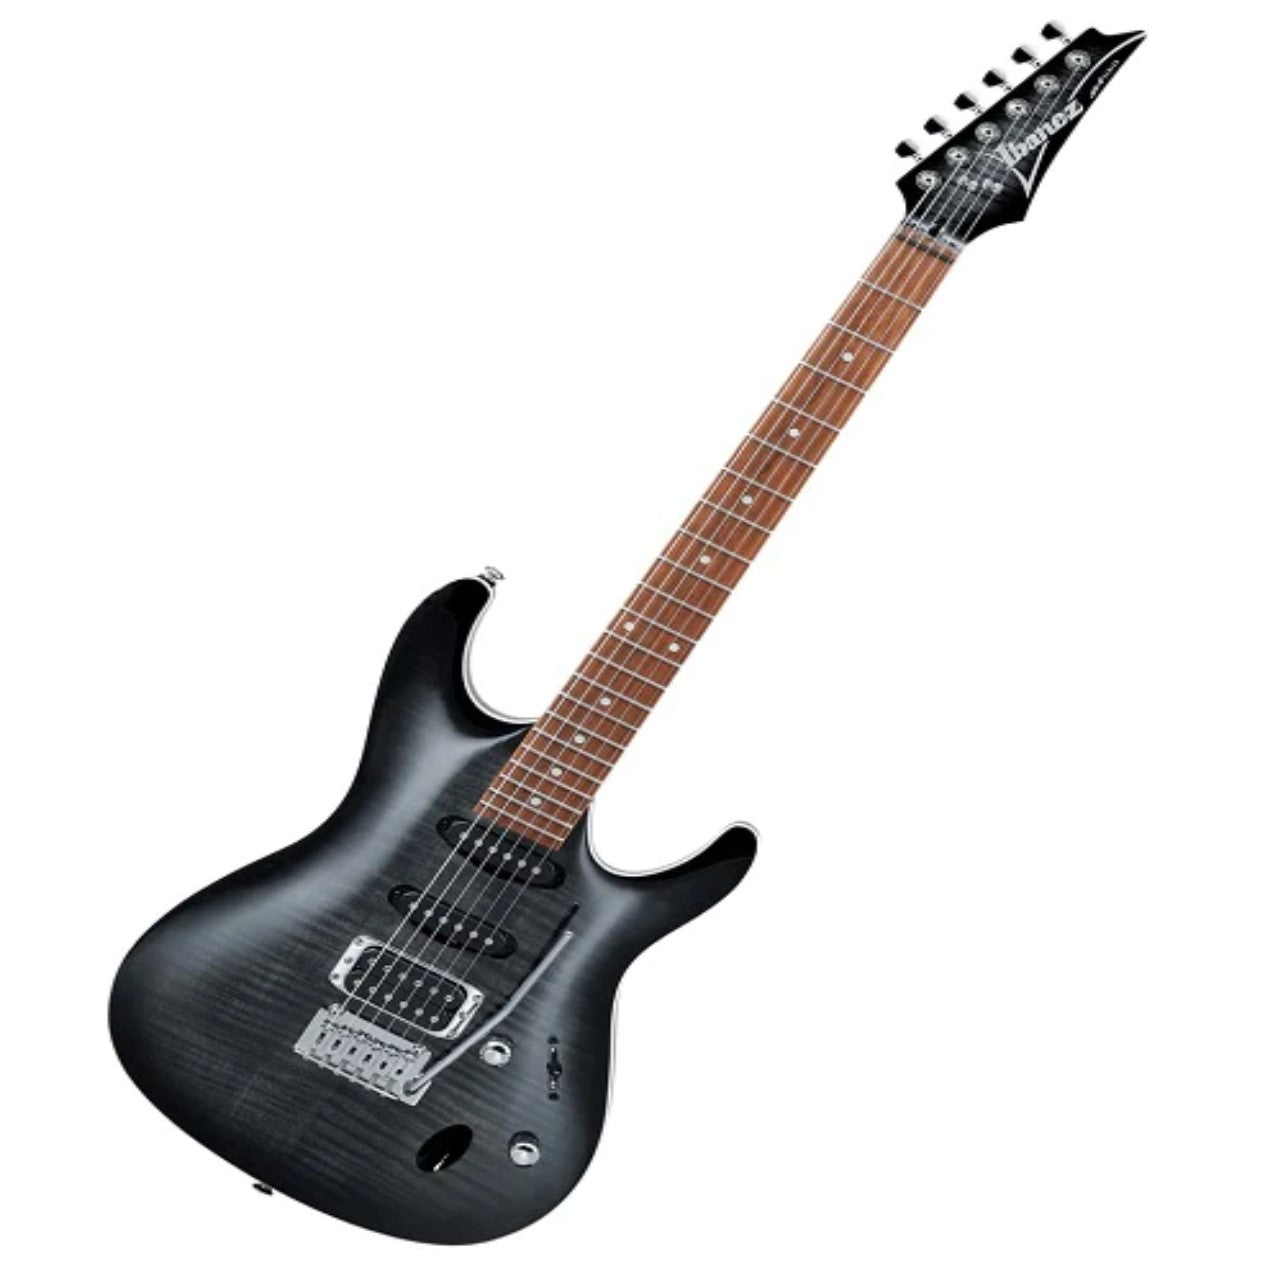 Ibanez Guitarra eléctrica SA260FM-TGB de arce/okoume transparent gray.